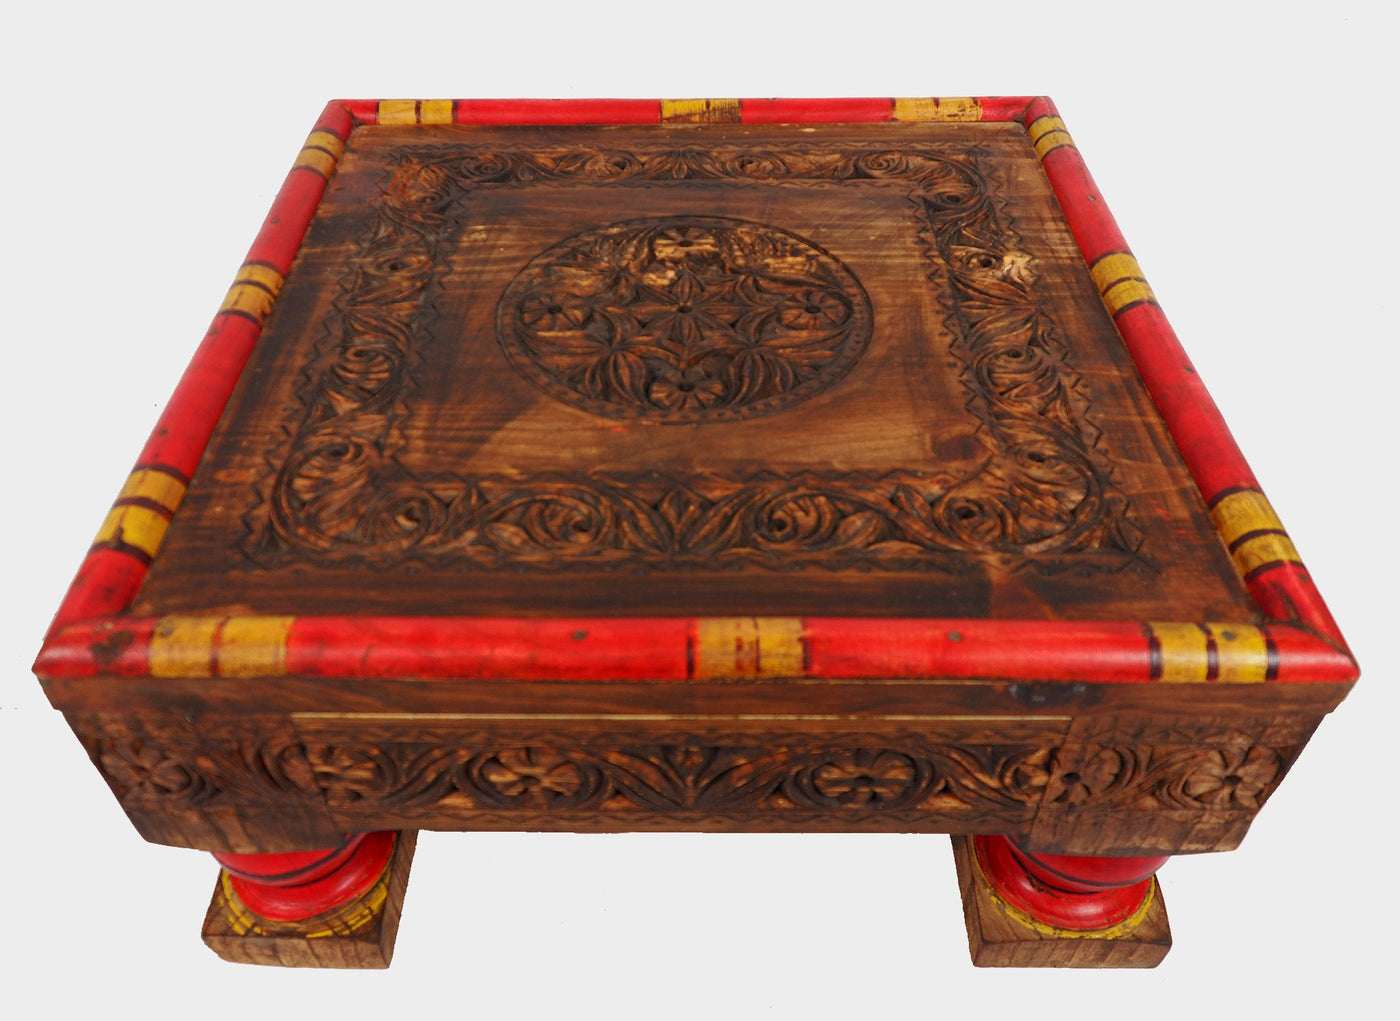 50x50 cm Massivholz handgeschnitzte Teetisch kolonialstil Wohnzimmertisch Tisch  tisch aus Afghanistan Nuristan Punjab Hocker Orientsbazar   